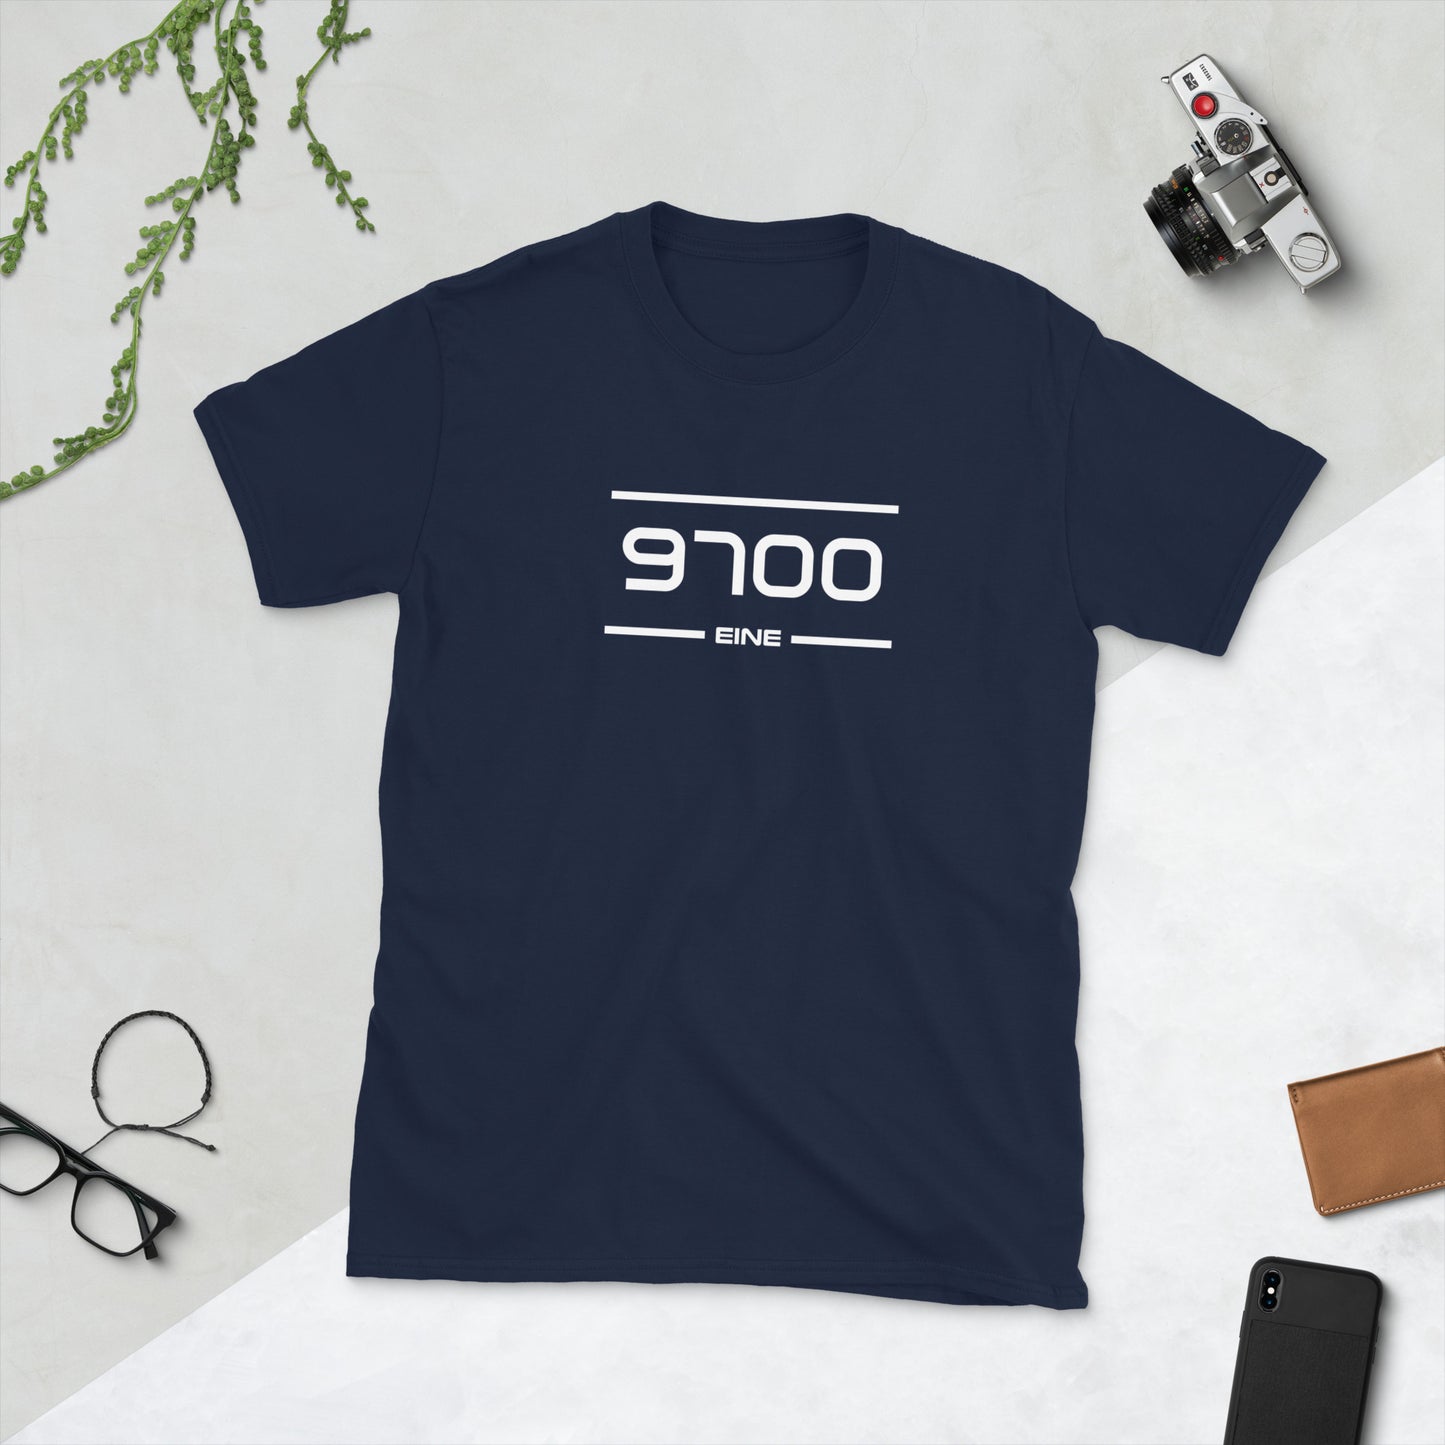 T-Shirt - 9700 - Eine